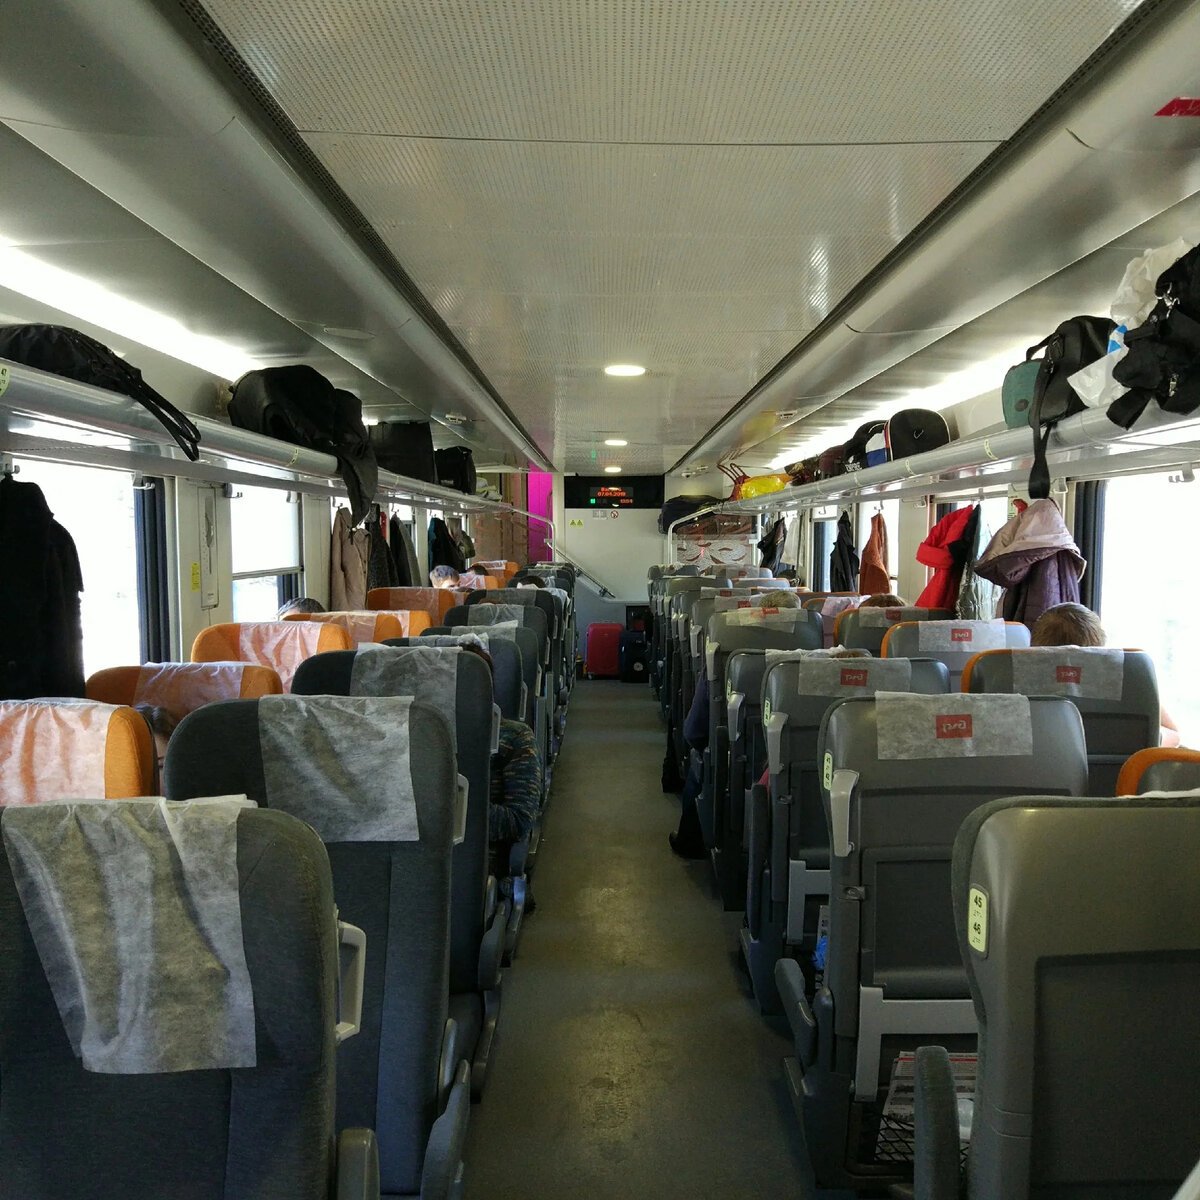 сидячий вагон в поезде пенза москва